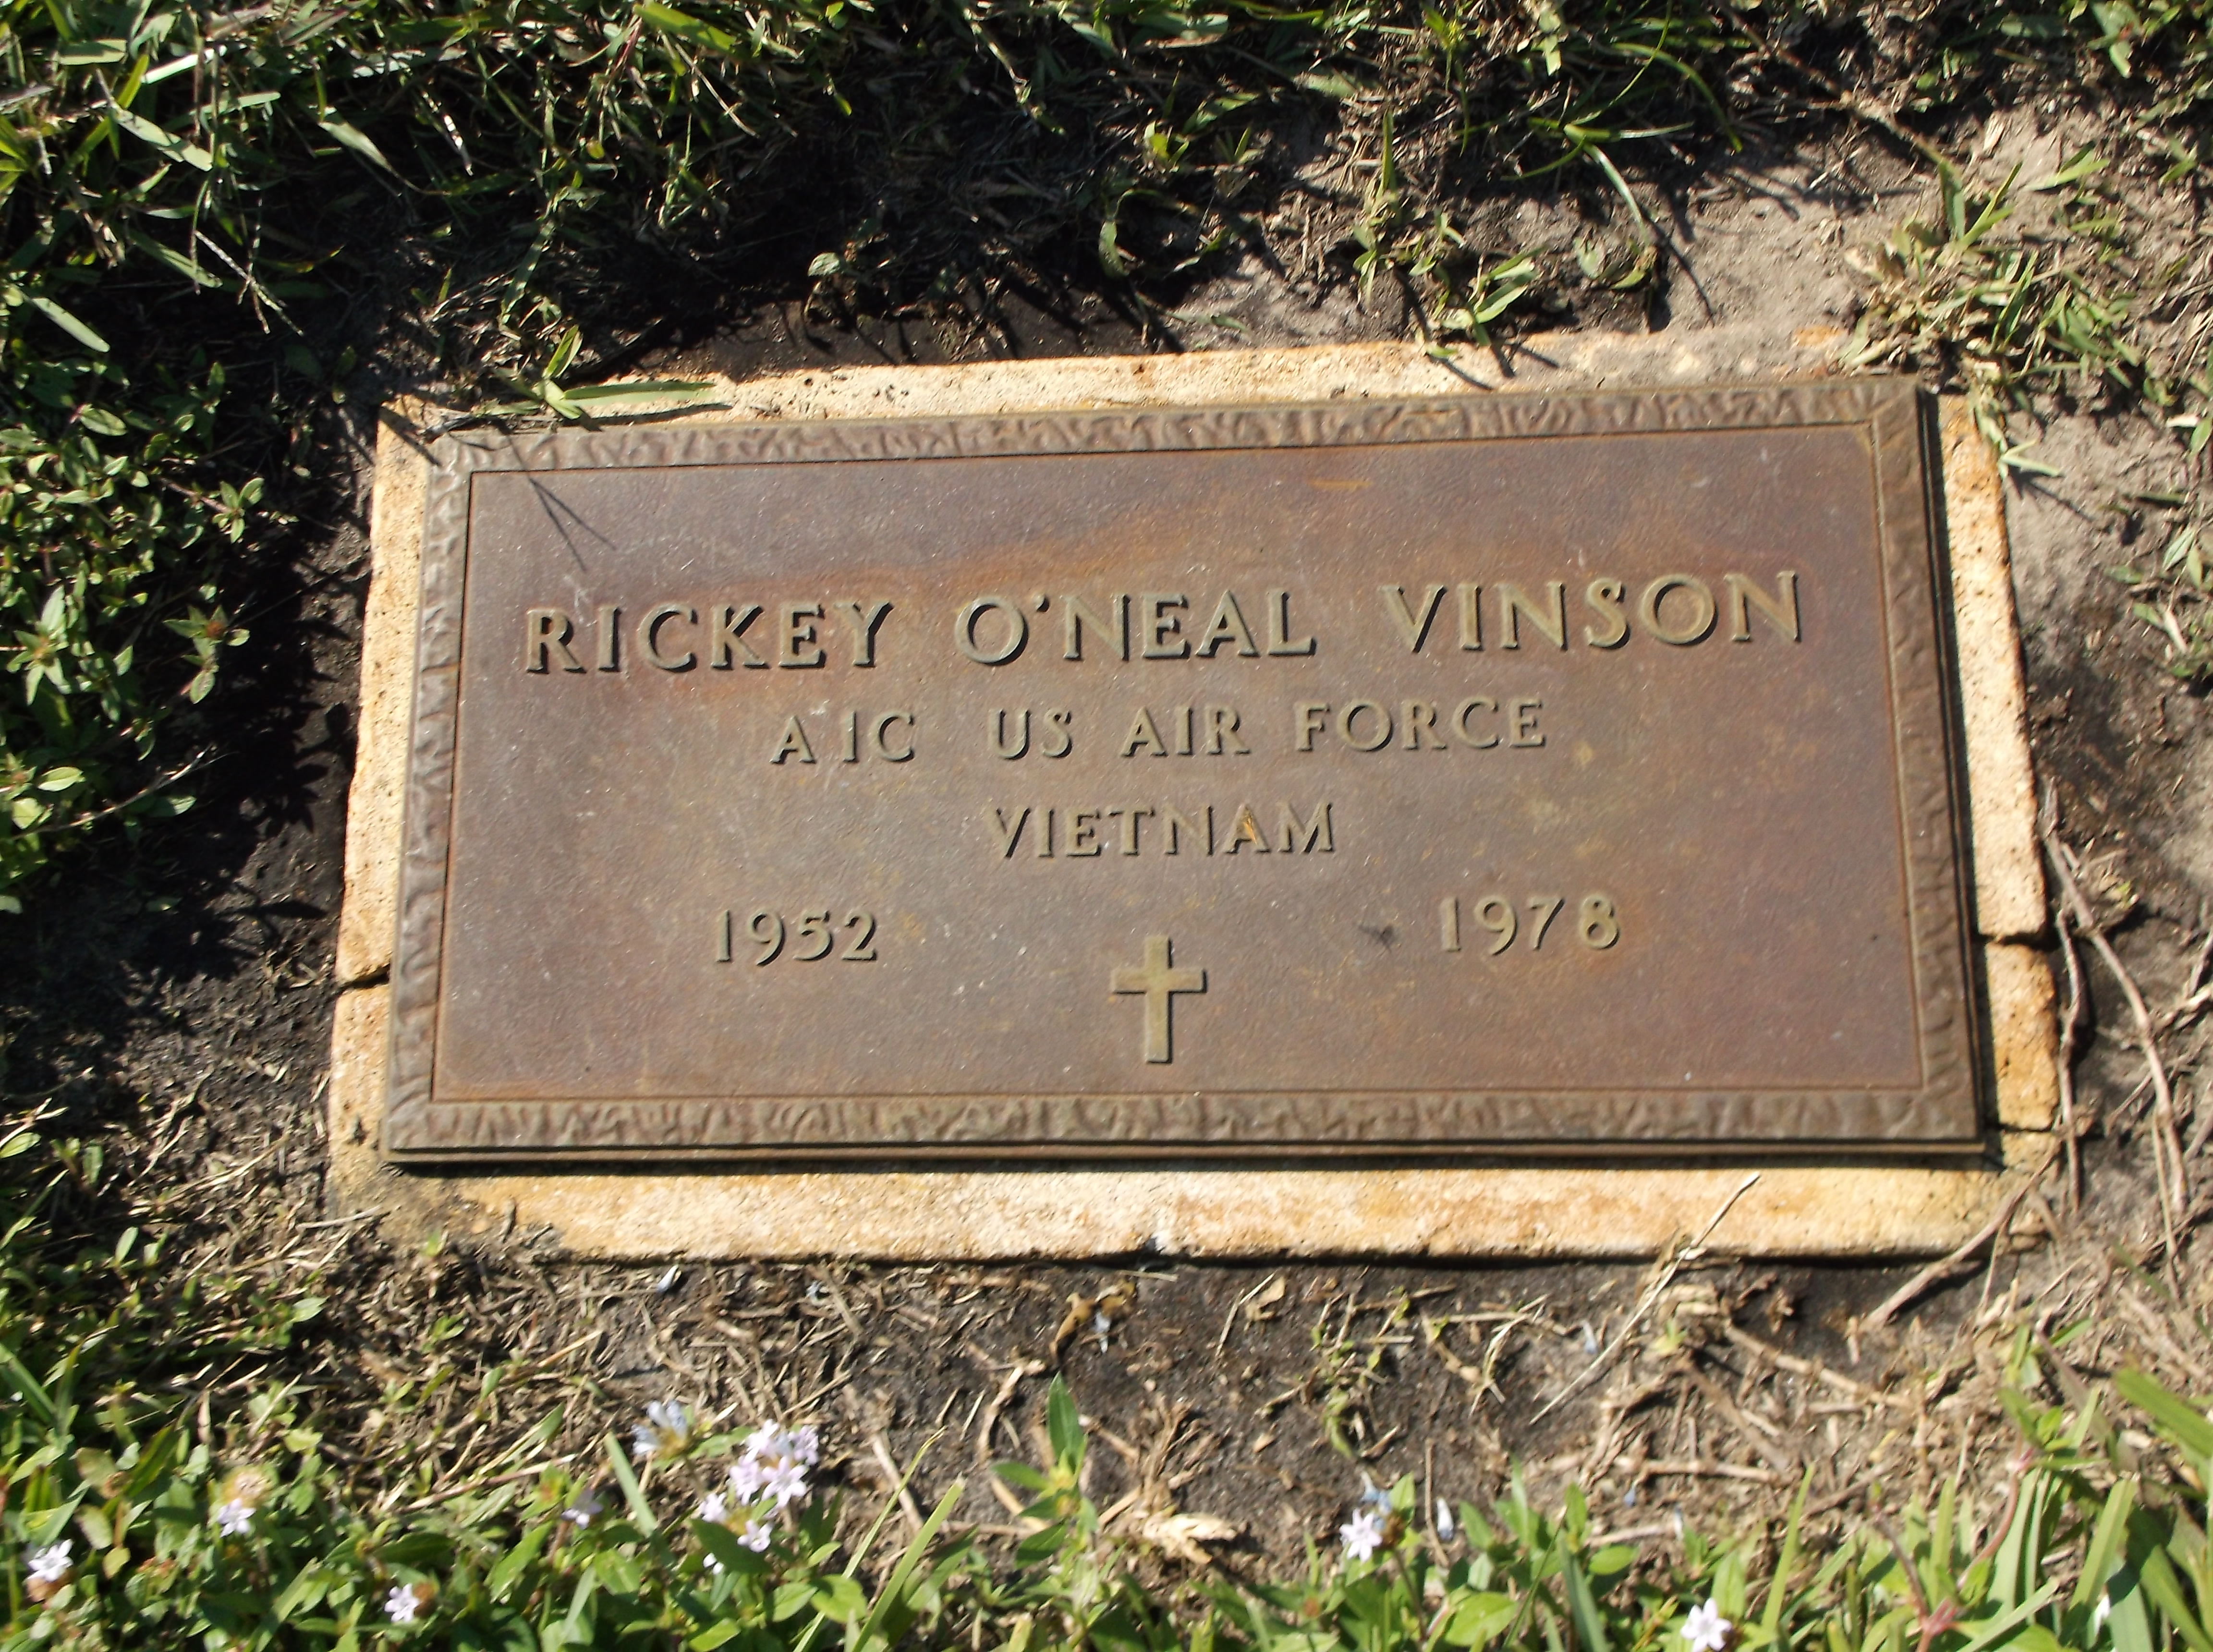 Rickey O'Neal Vinson